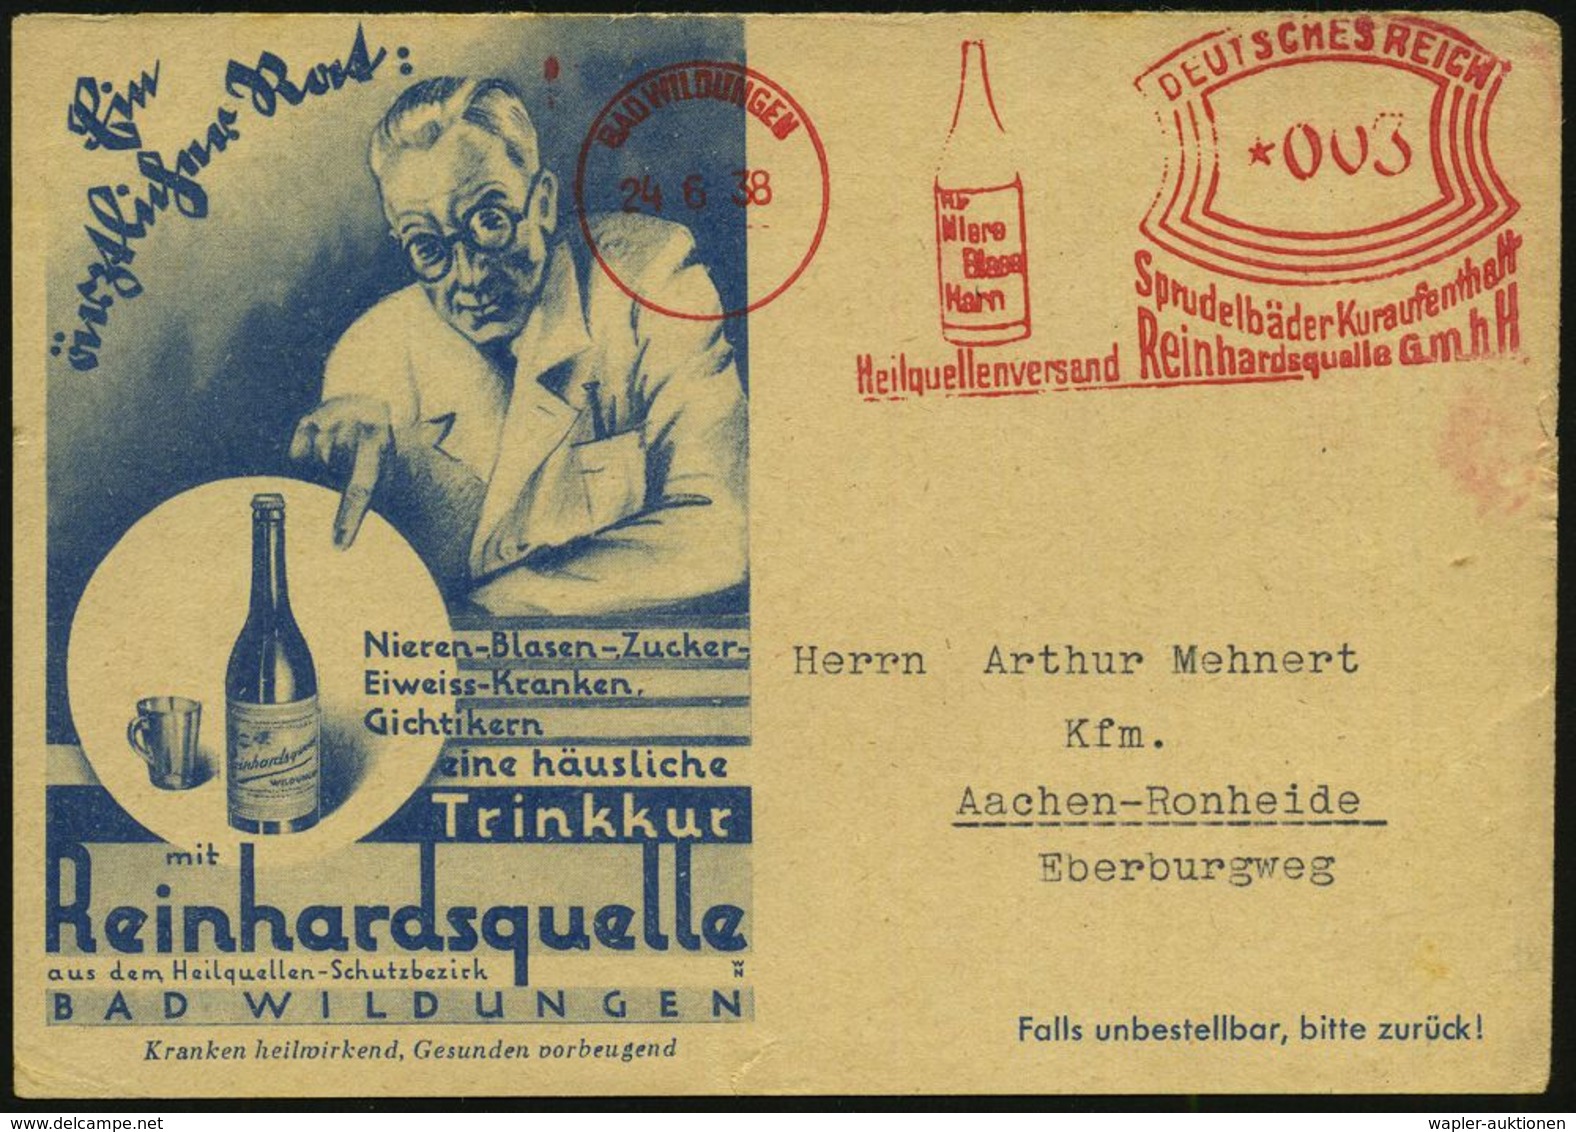 KURORTE / HEILQUELLEN : BAD WILDUNGEN/ Sprudelbäder../ Heilquellenversand Reinhardsquelle GmbH 1938 (24.6.) AFS  = Heilq - Médecine